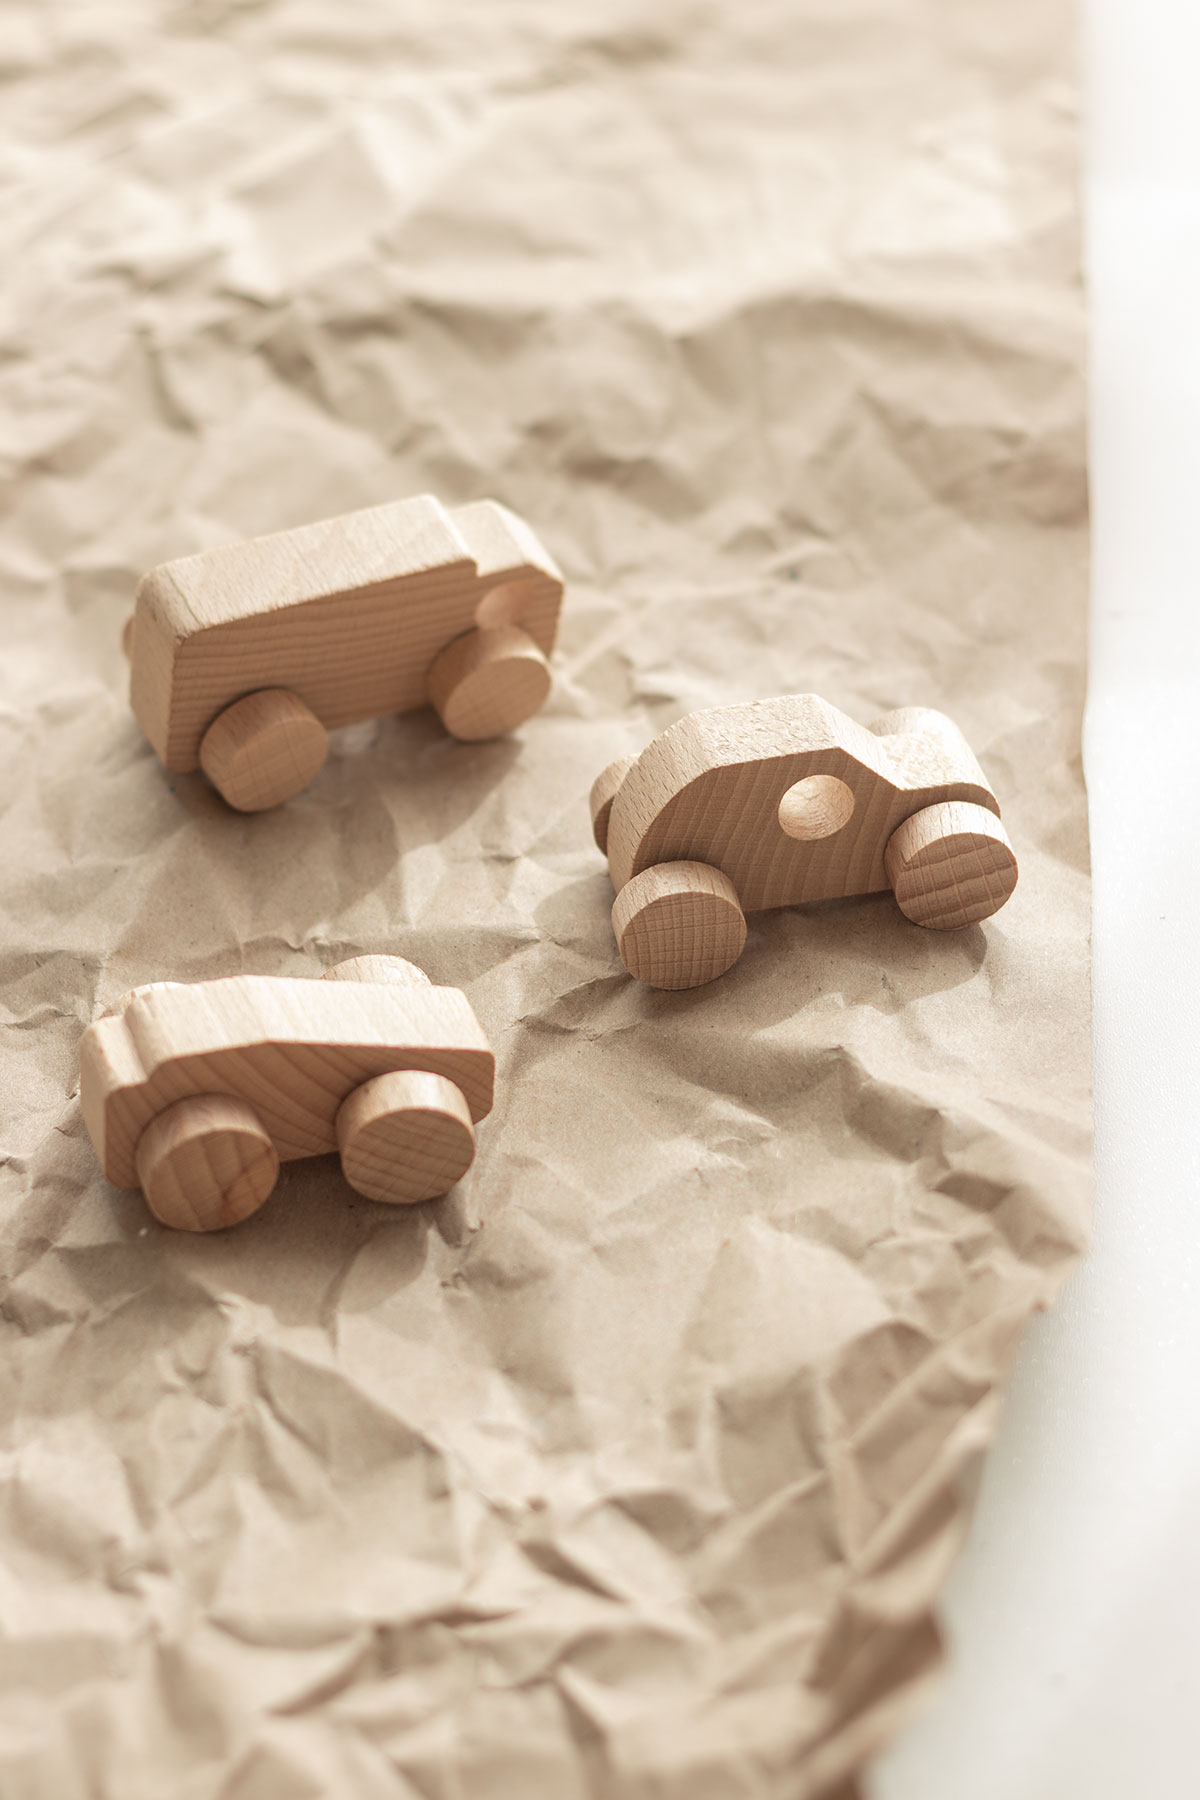 Nuevo: Cubos de madera para personalizar - Blog Mabaonline